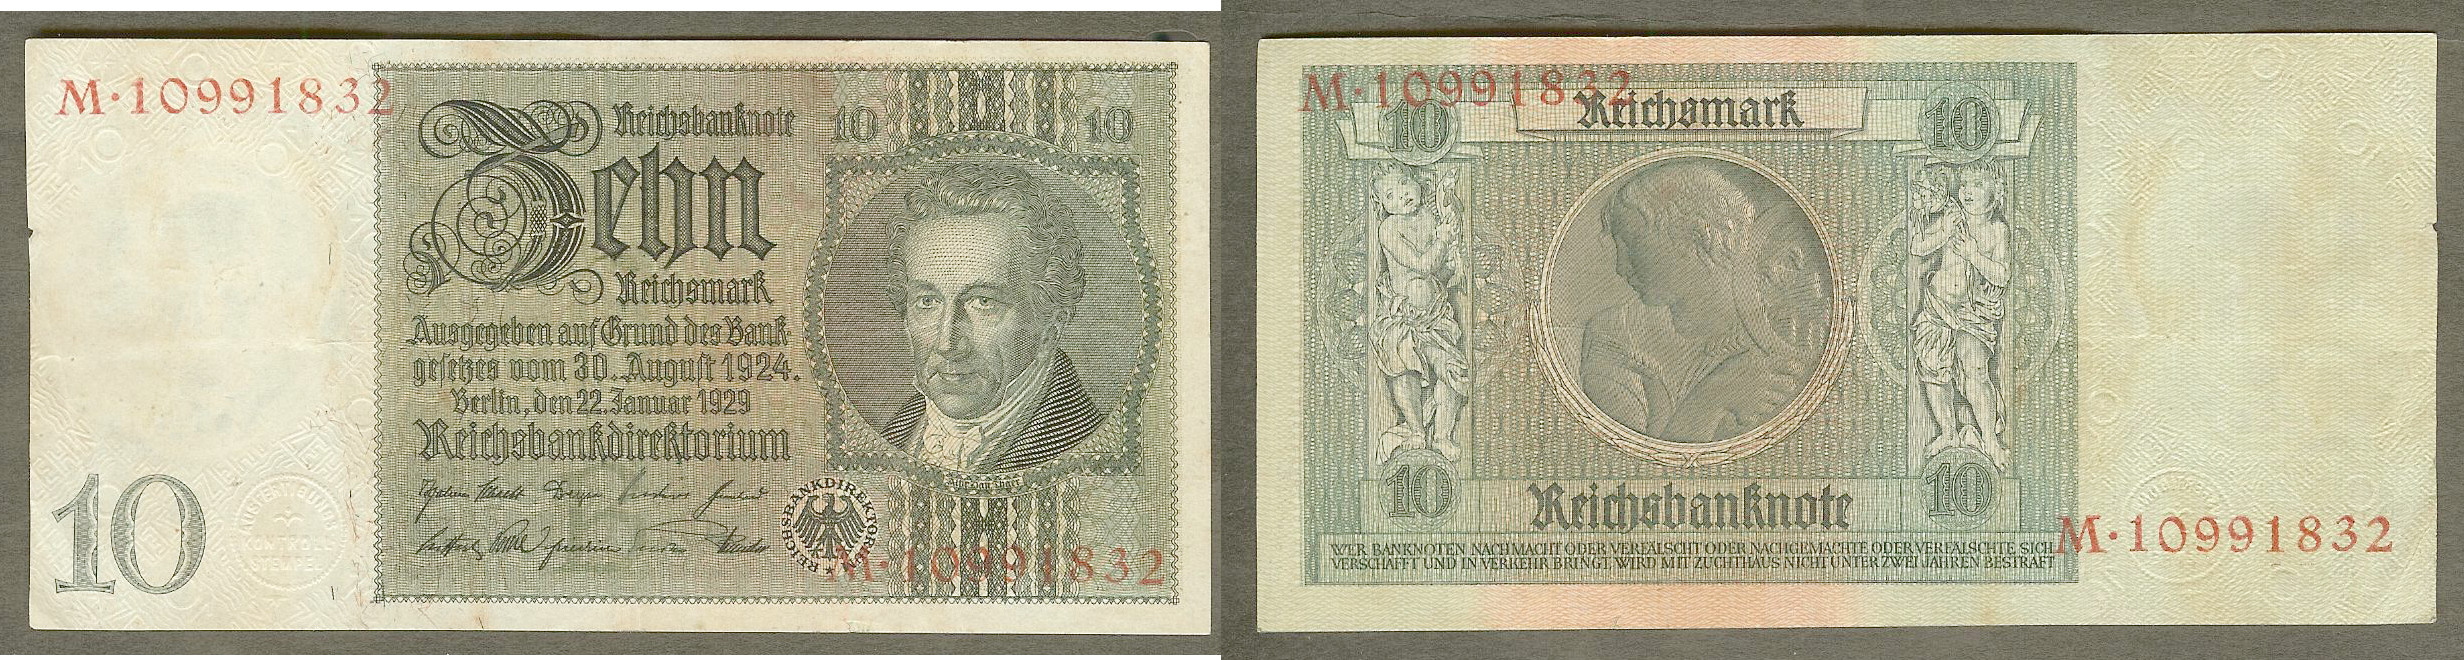 Allemagne  10 reichsmark 22.1.1929 SUP